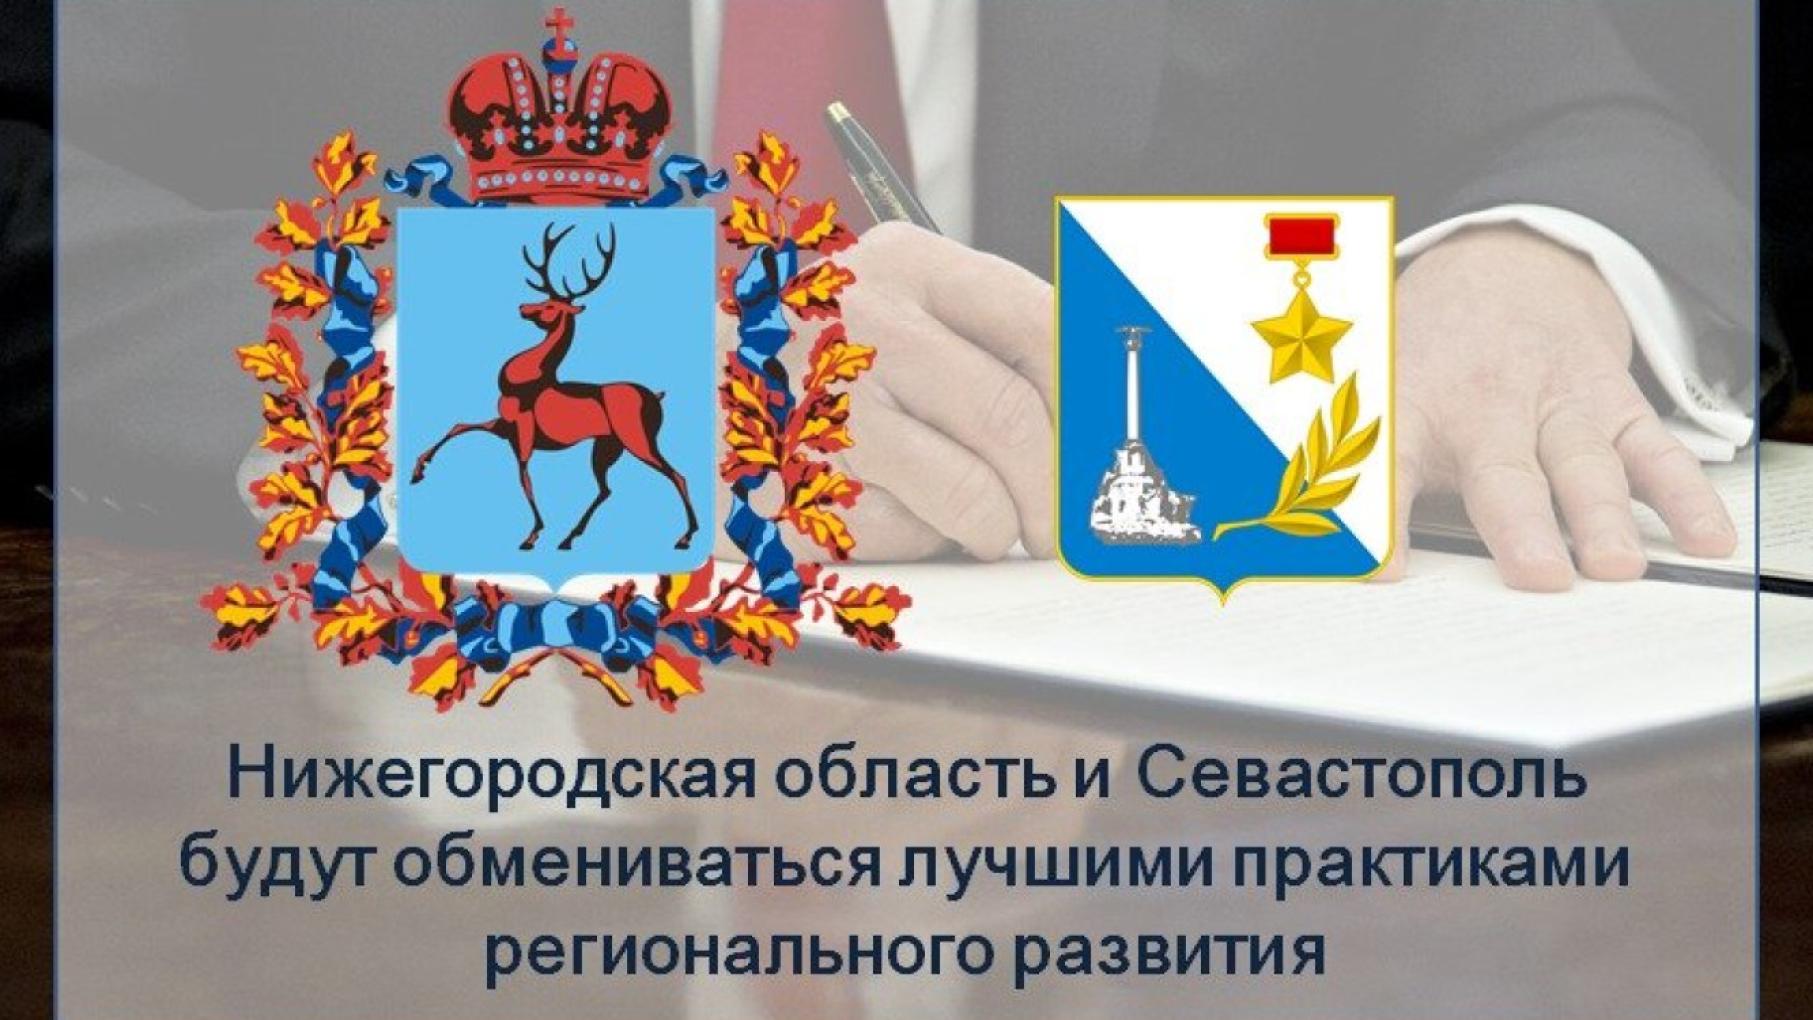 Нижегородская область будет сотрудничать с Севастополем